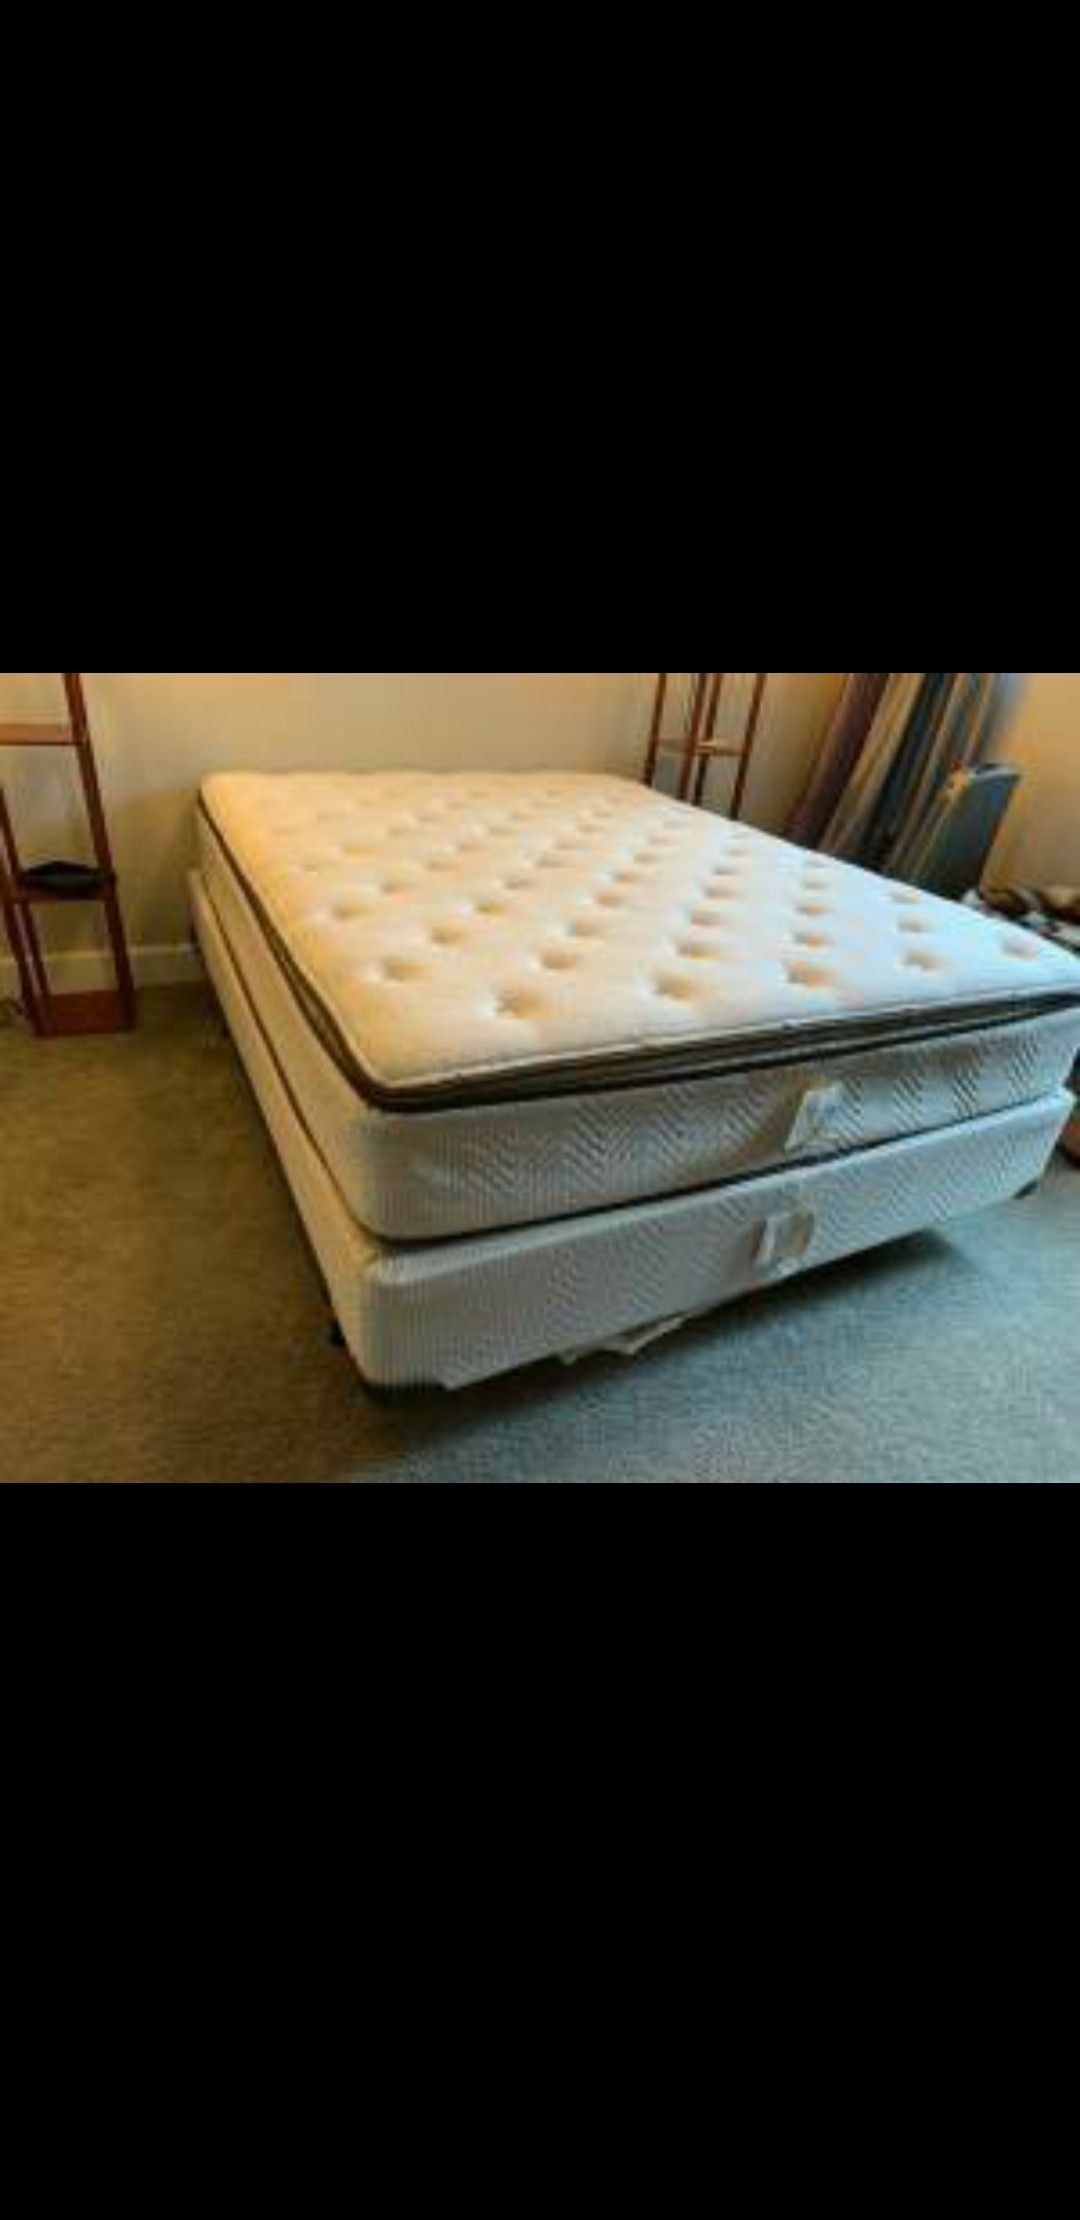 Very nice Queen mattress